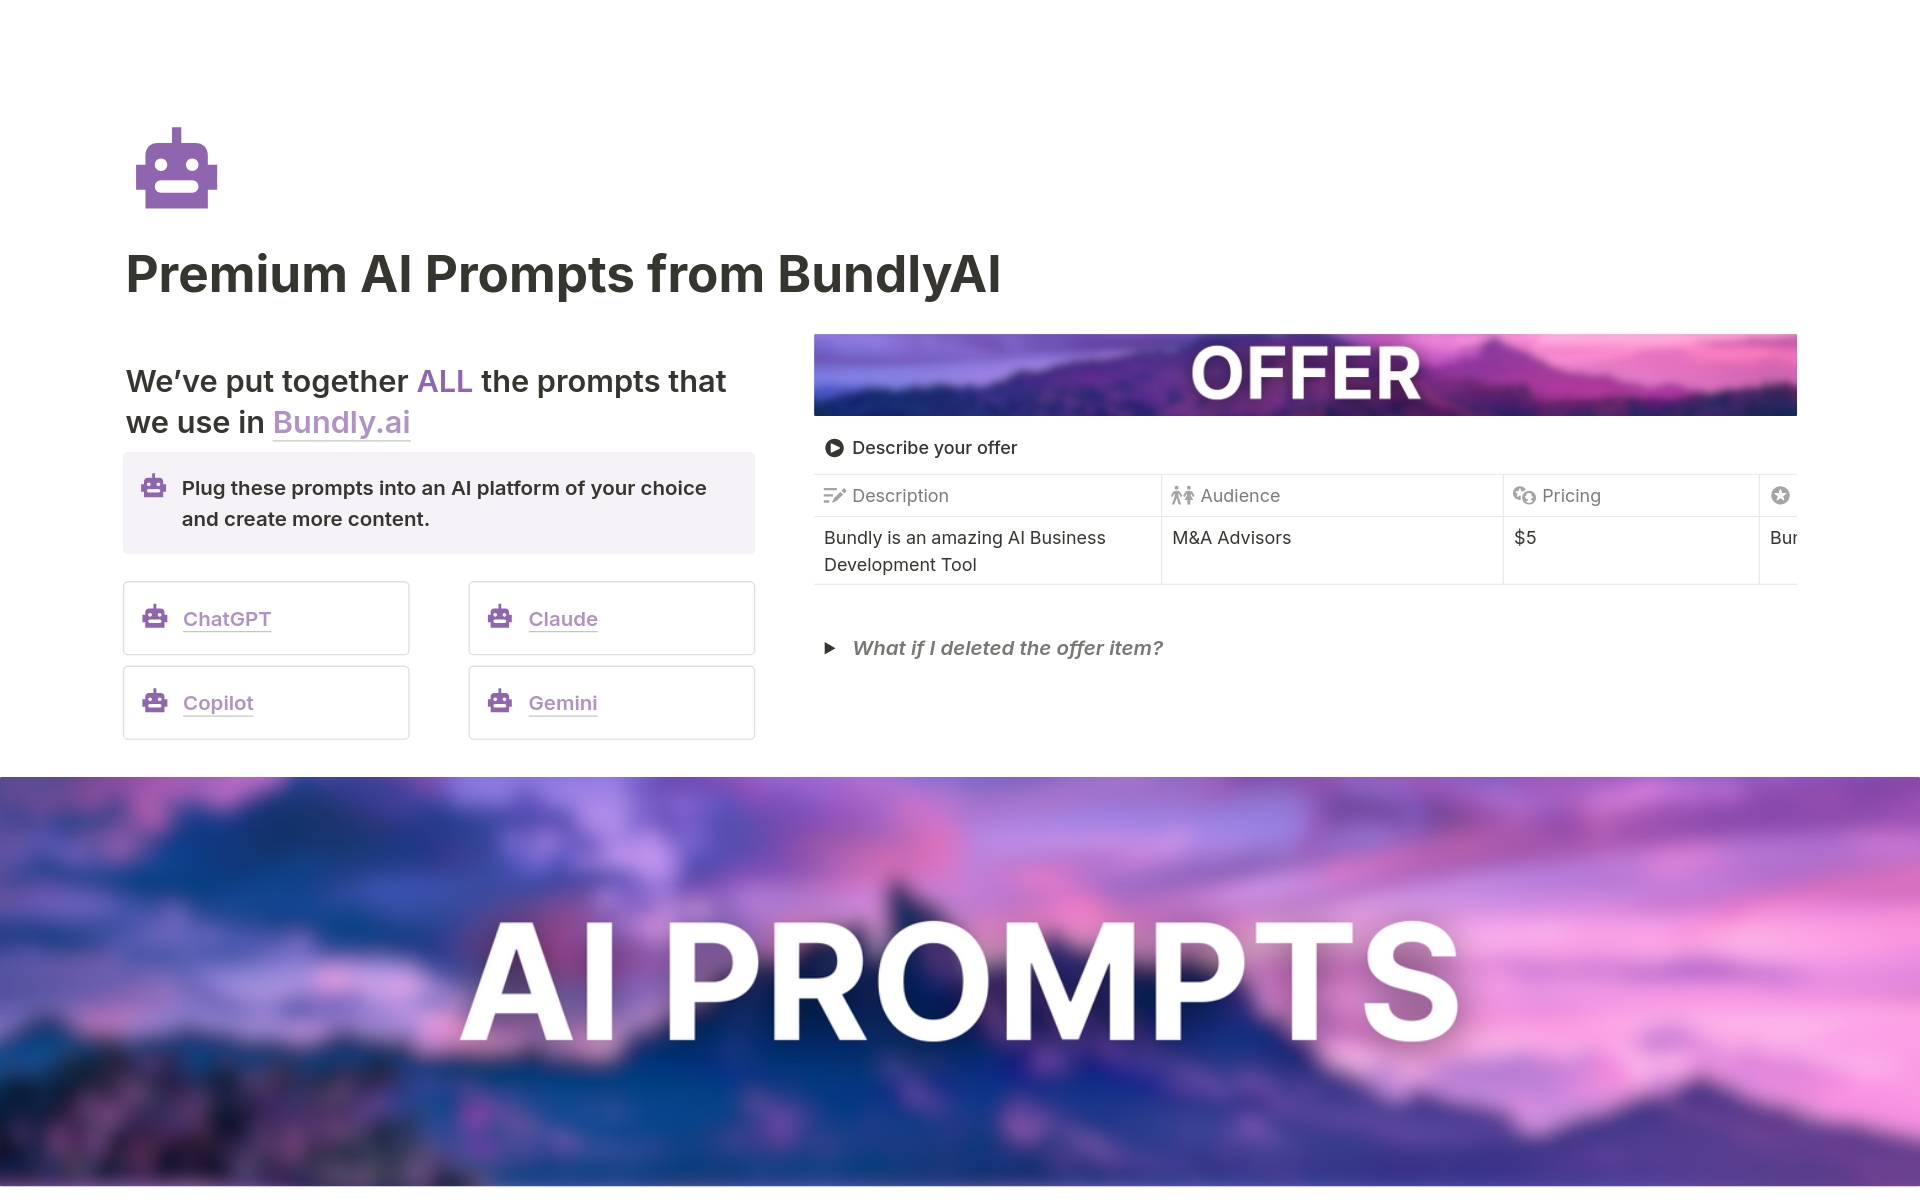 Vista previa de una plantilla para Premium Business Development AI Prompts